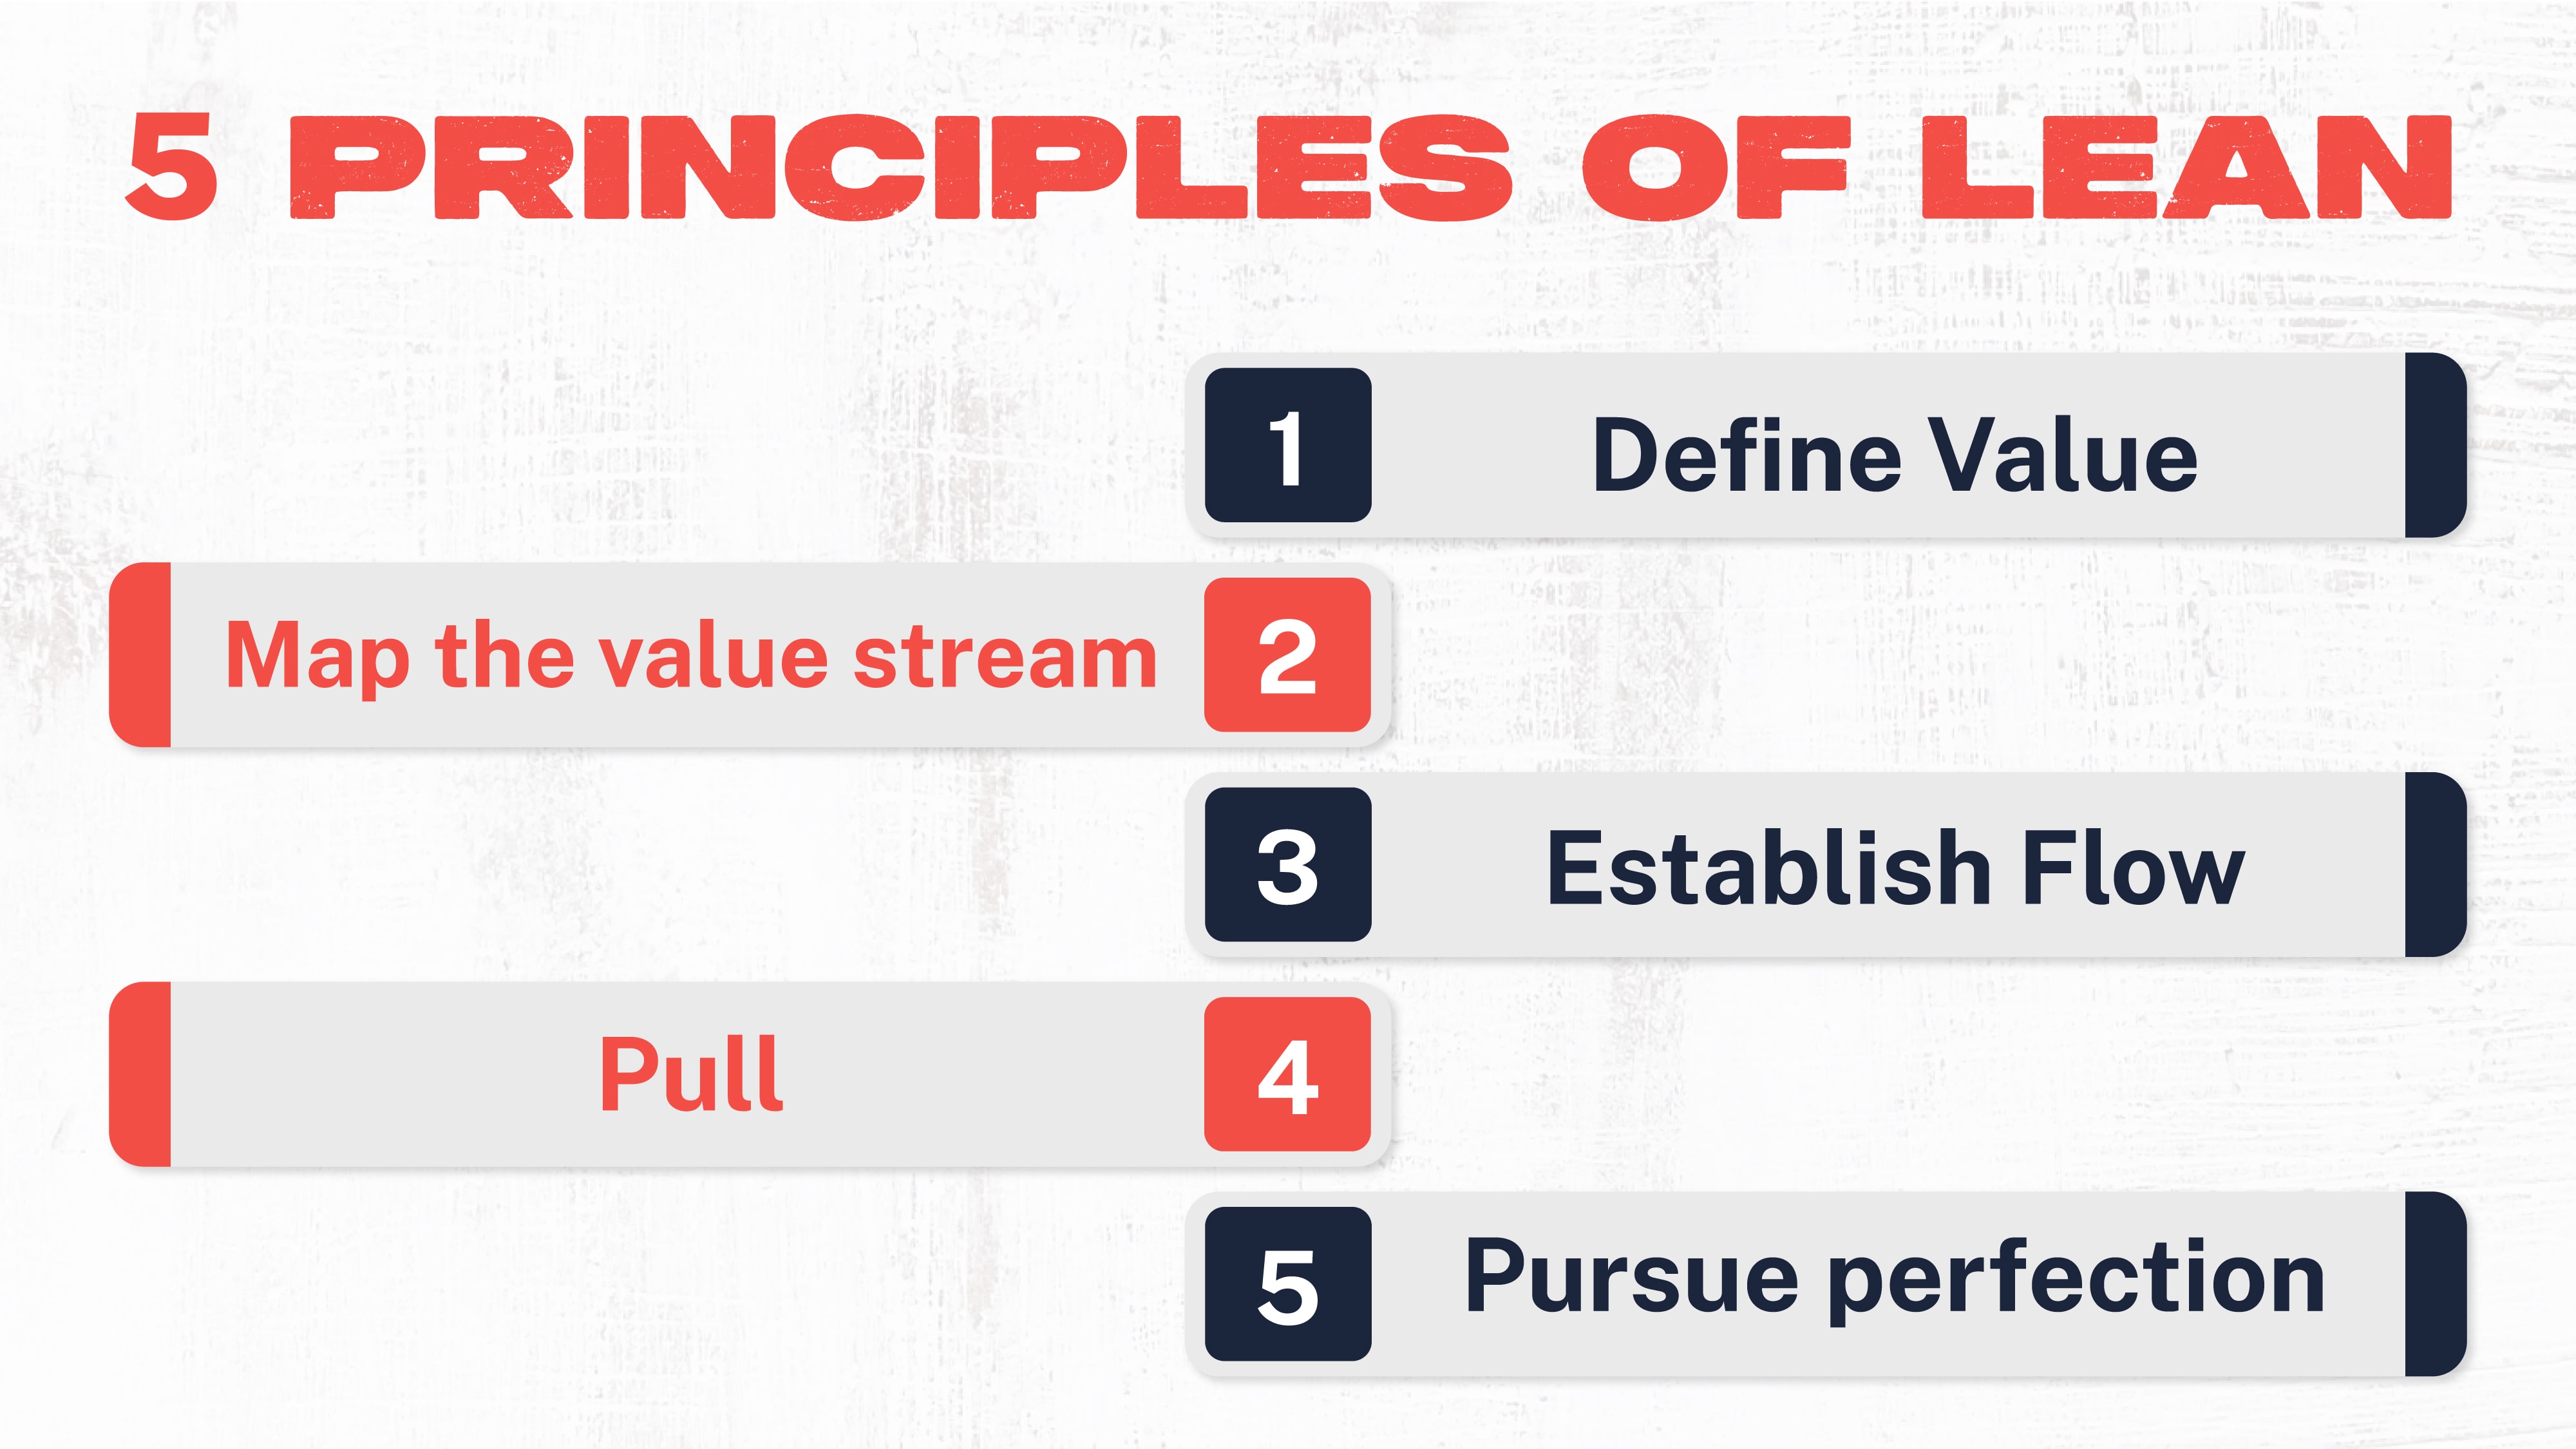 5 principles of lean